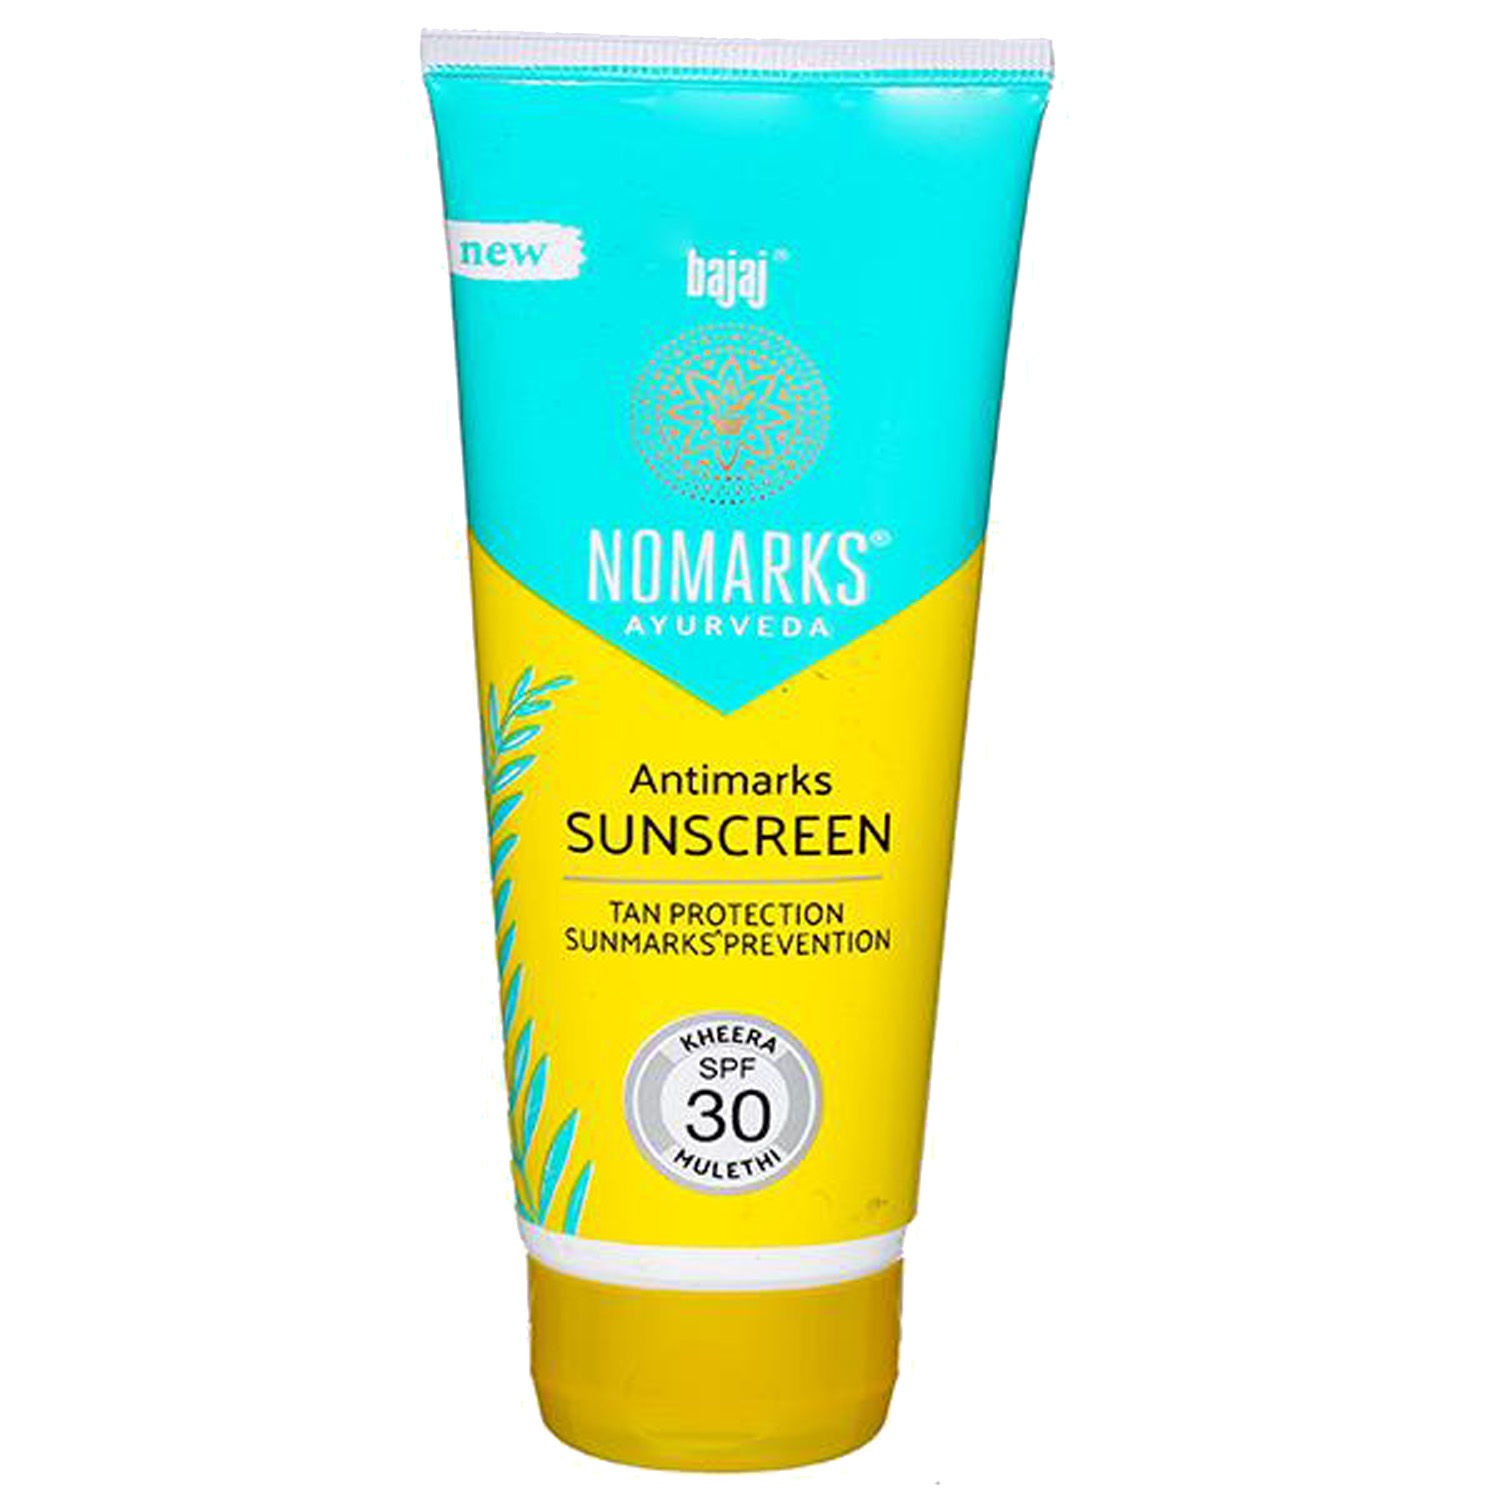 Buy Bajaj Nomarks Antimarks Sunscreen SPF 30, 50 gm Online